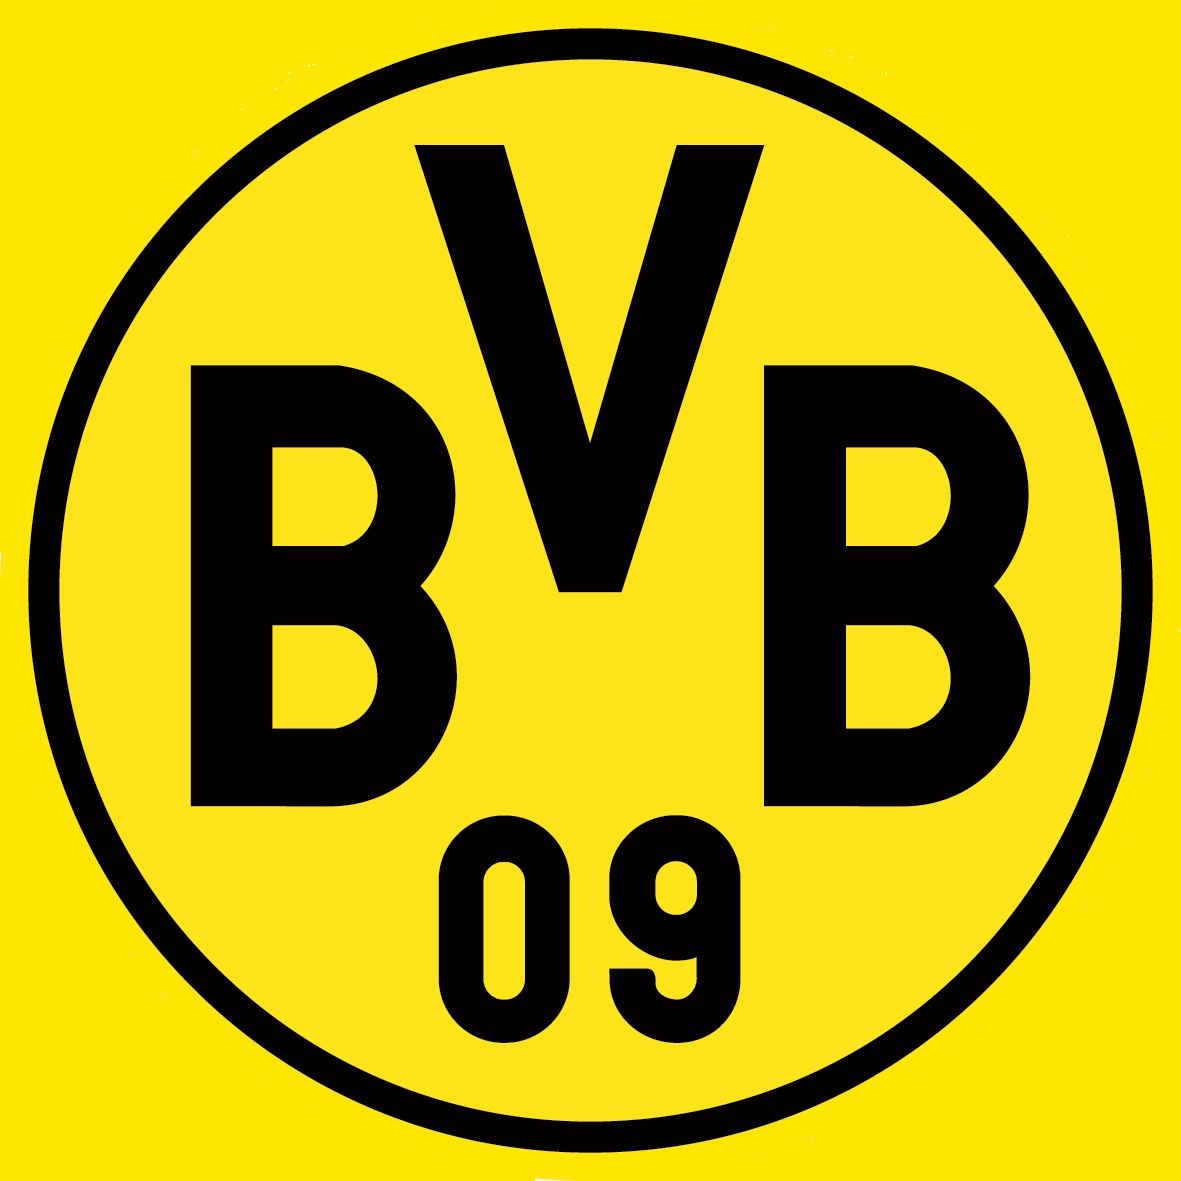 BVB 官方球迷俱乐部